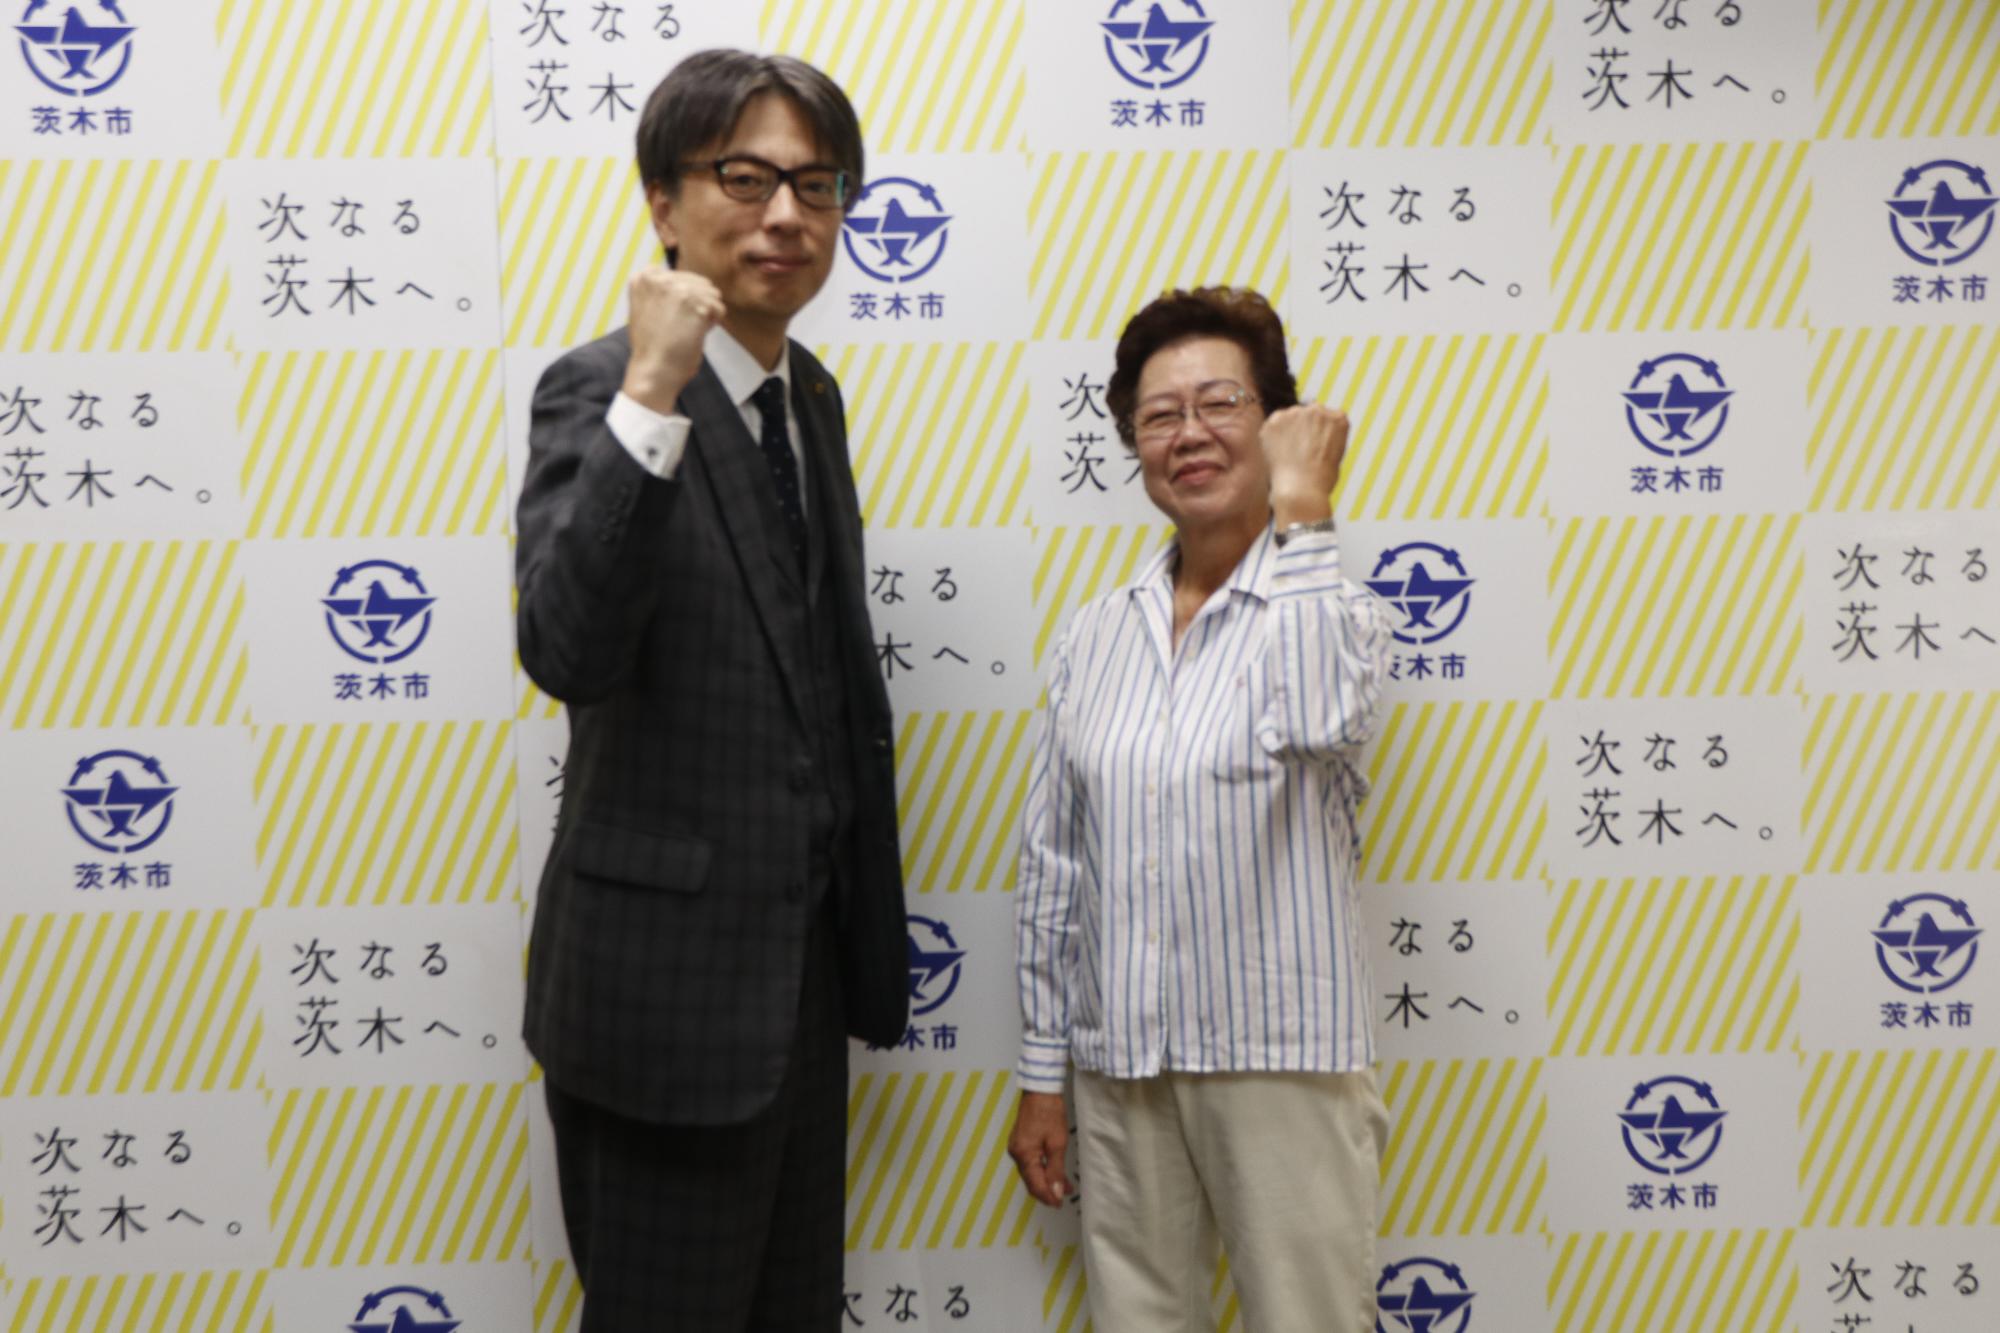 吉井由美子さんとガッツポーズをする市長の写真